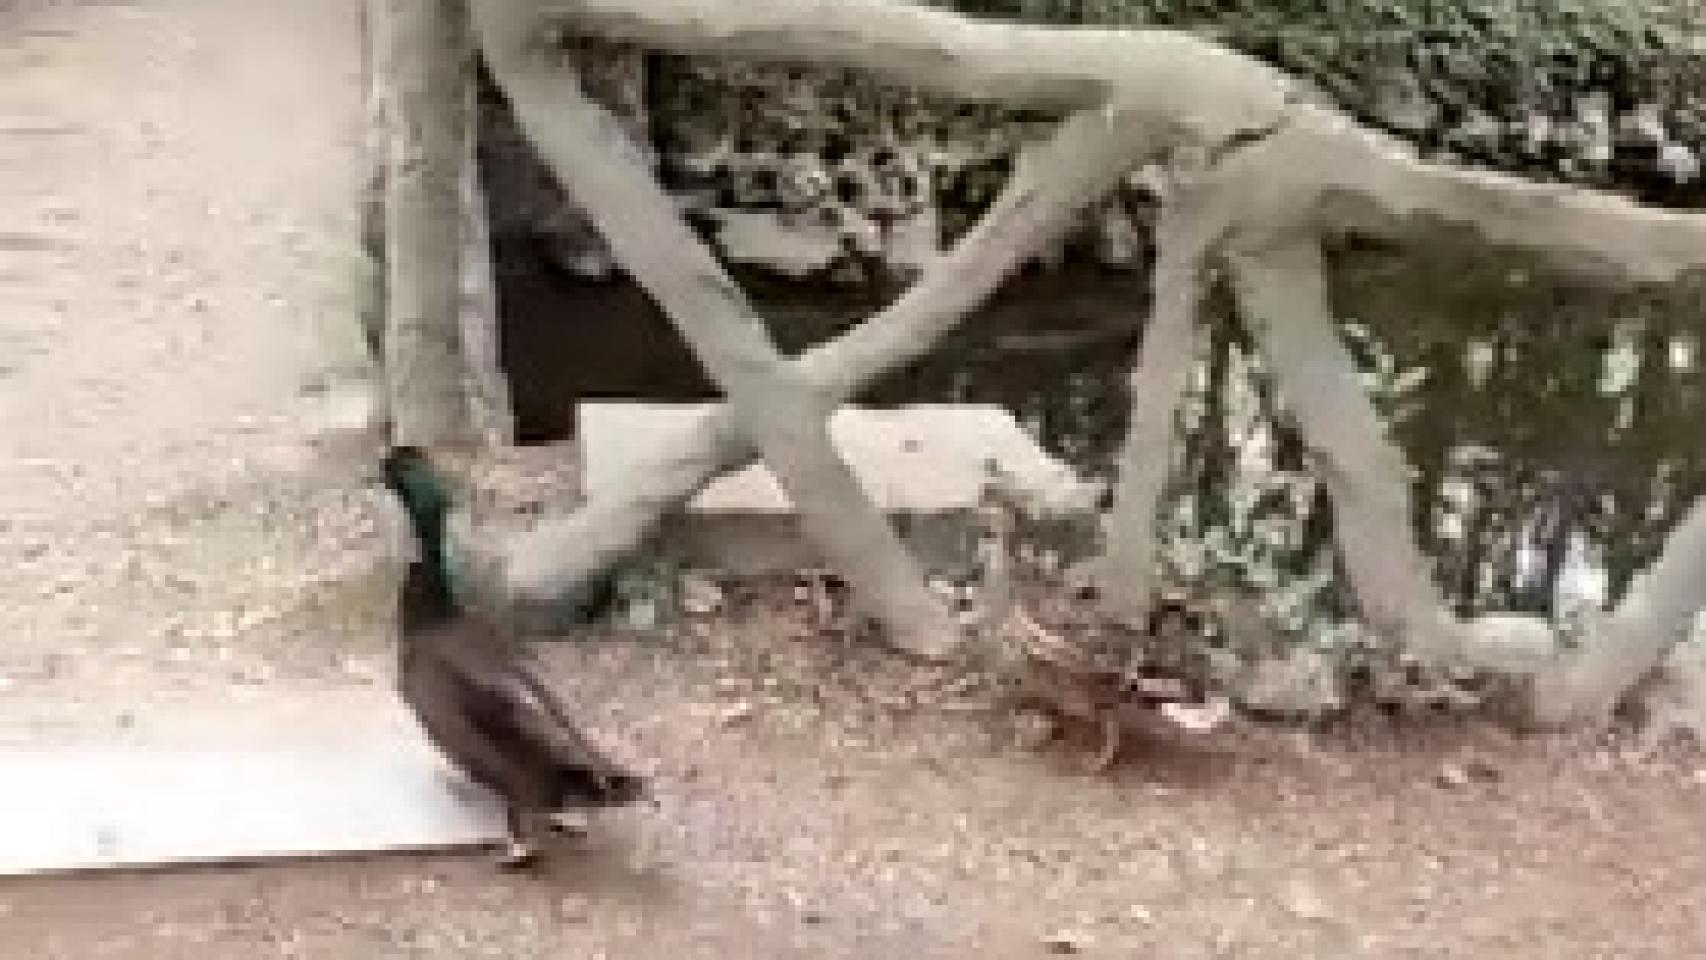 La pareja de patos que se escapó del Campo Grande de Valladolid